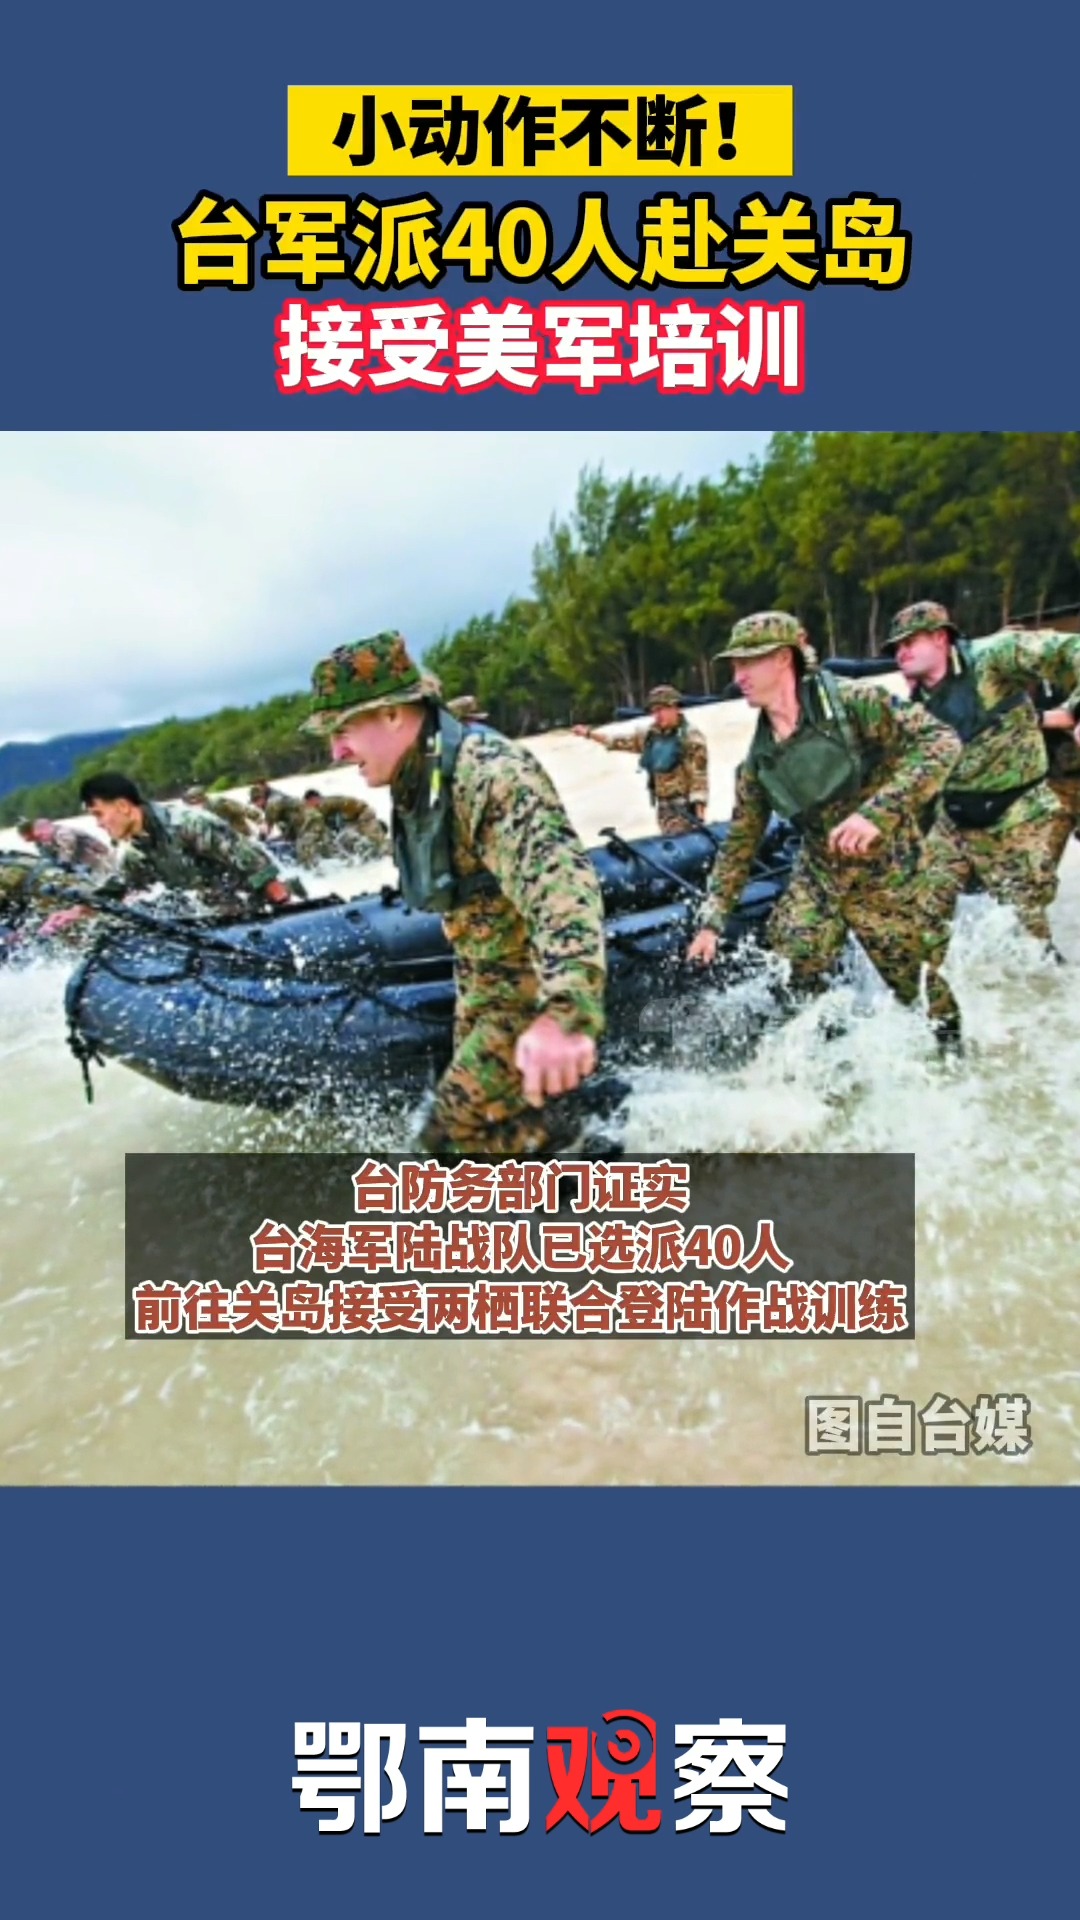 社会新闻小动作不断11月2日台湾防务部门负责人证实40名台军在关岛与